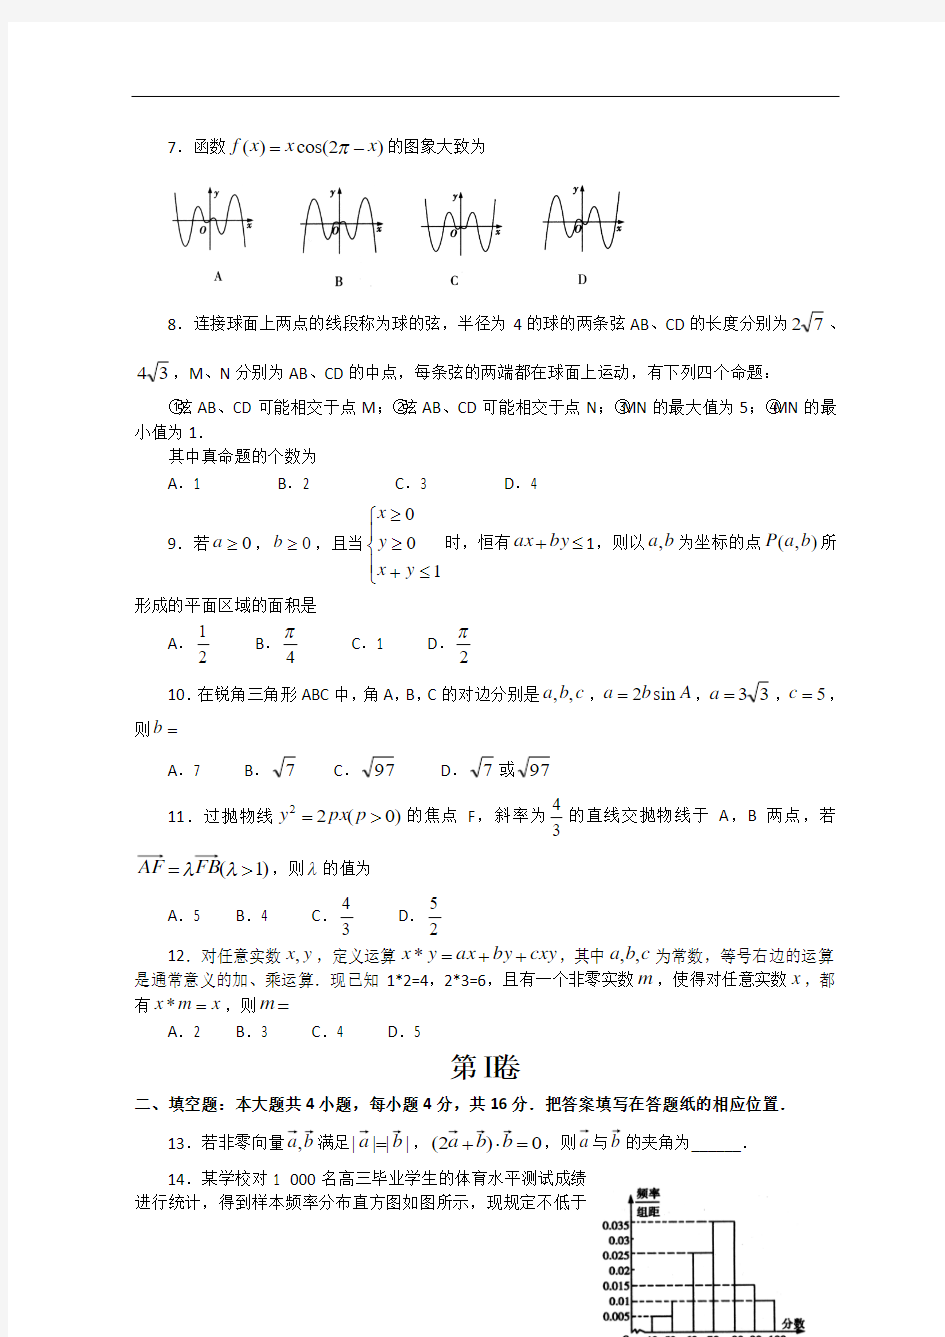 山东省2013届高三高考模拟卷(三)文科数学试题